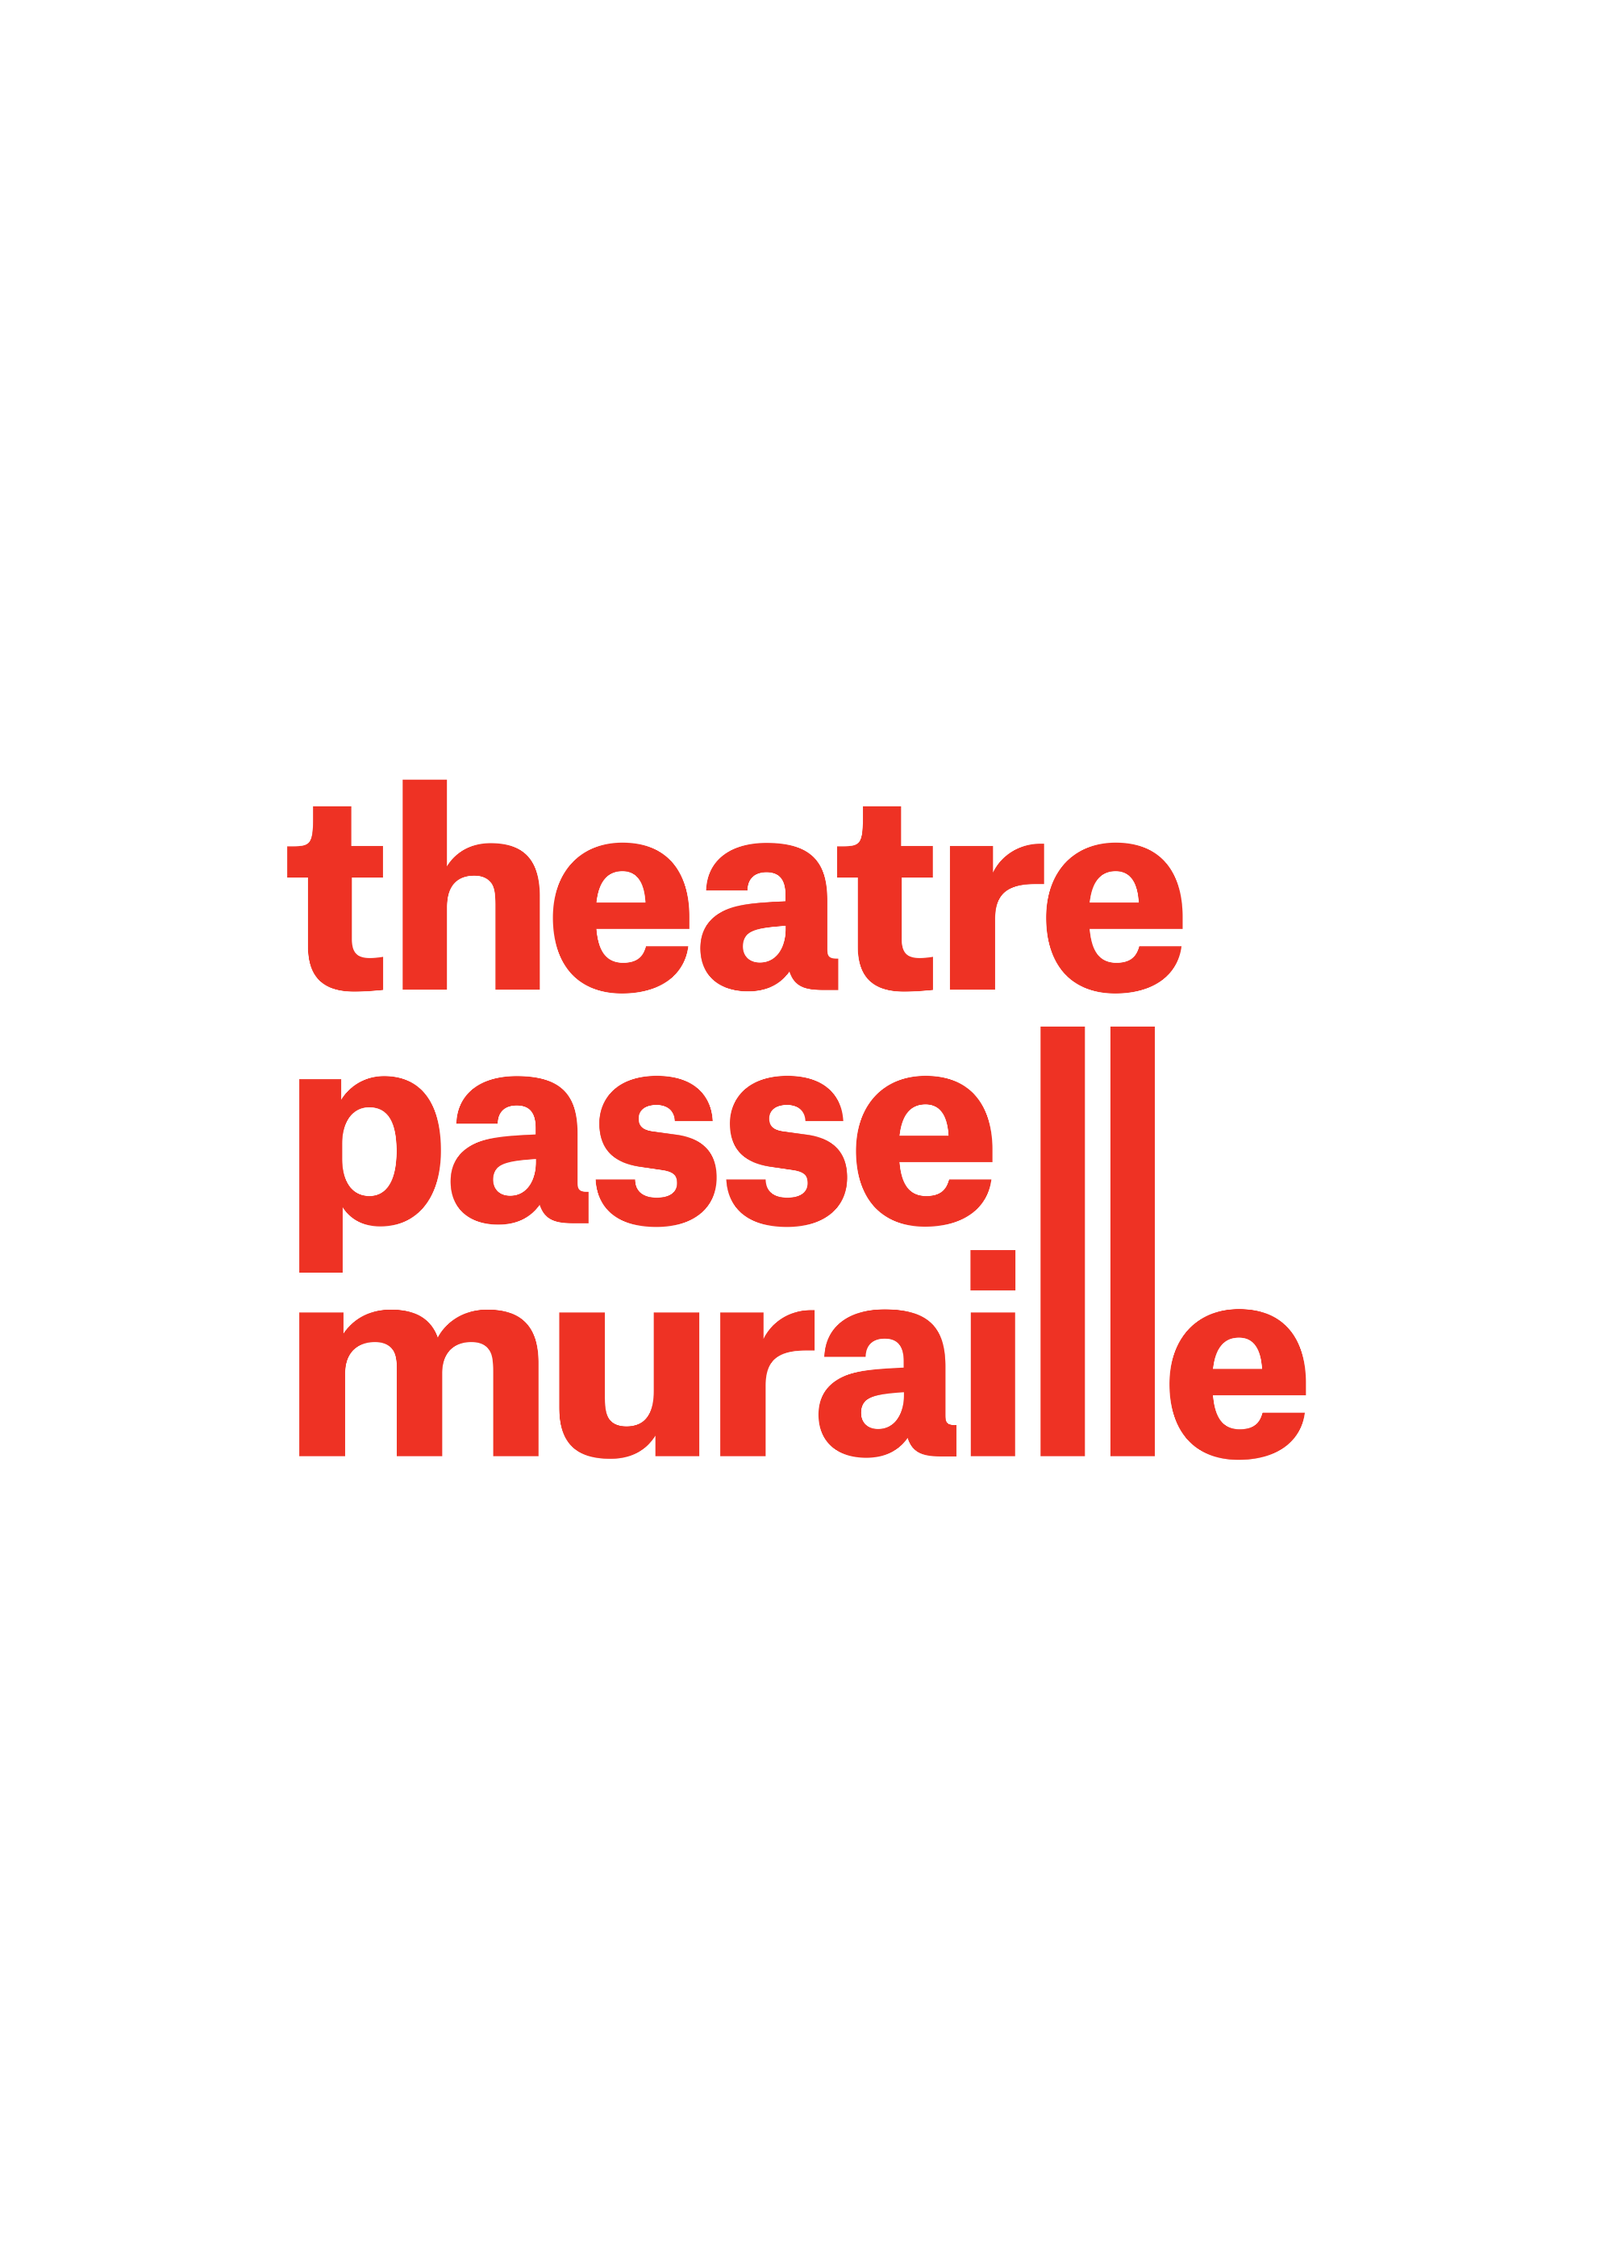 Logo for Theatre Passe Muraille